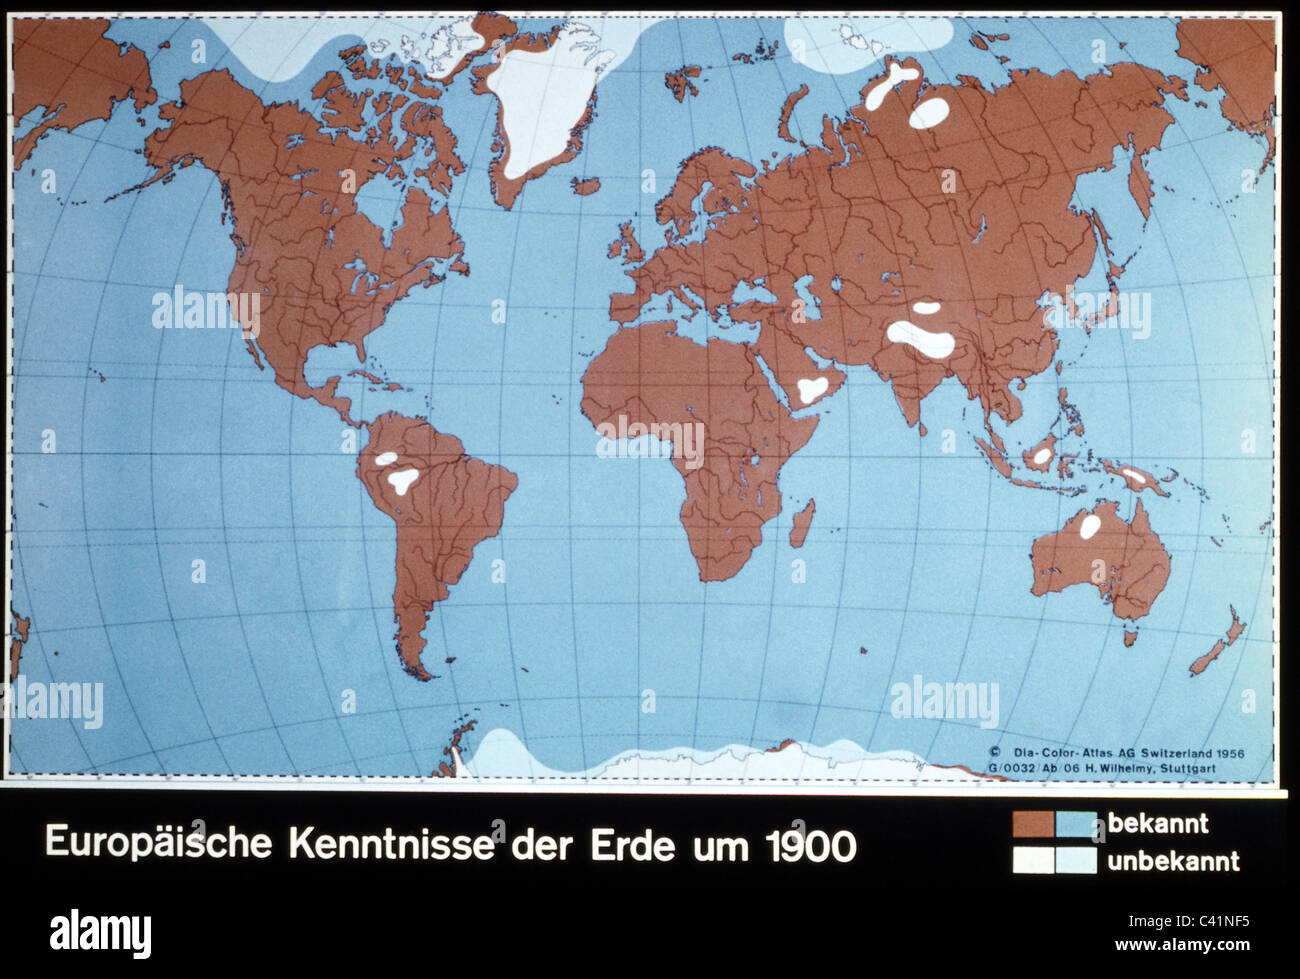 Kartographie, historische Karte, Neuzeit, Teile der Welt bekannt (braun und blau) und unbekannt (weiß) für Europäer, um 1900, zusätzliche-Rechte-Clearences-nicht vorhanden Stockfoto